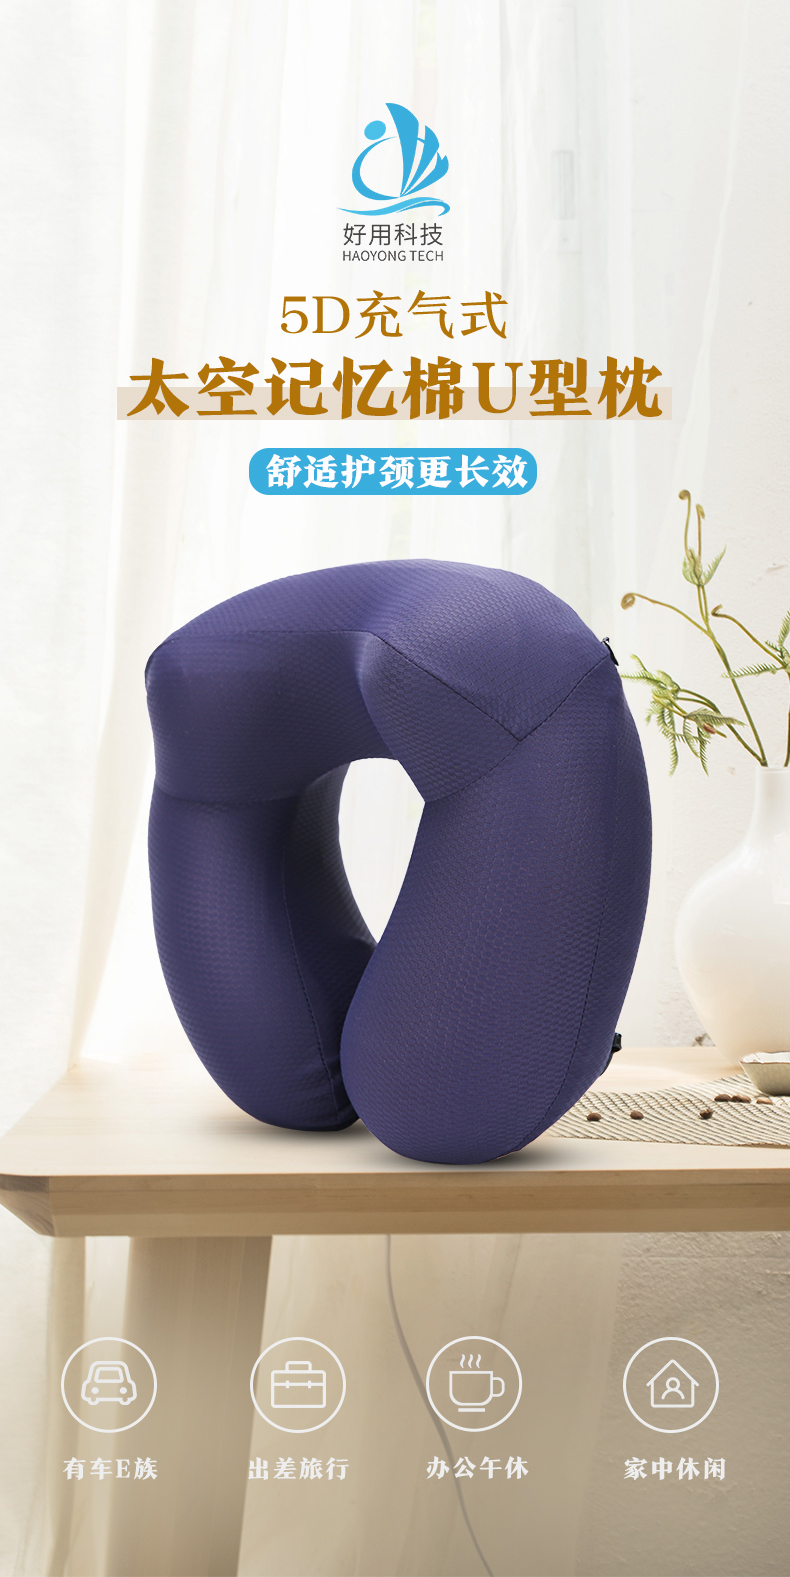 广州U型枕_u型枕的七种用法相关-广州好用科技有限公司